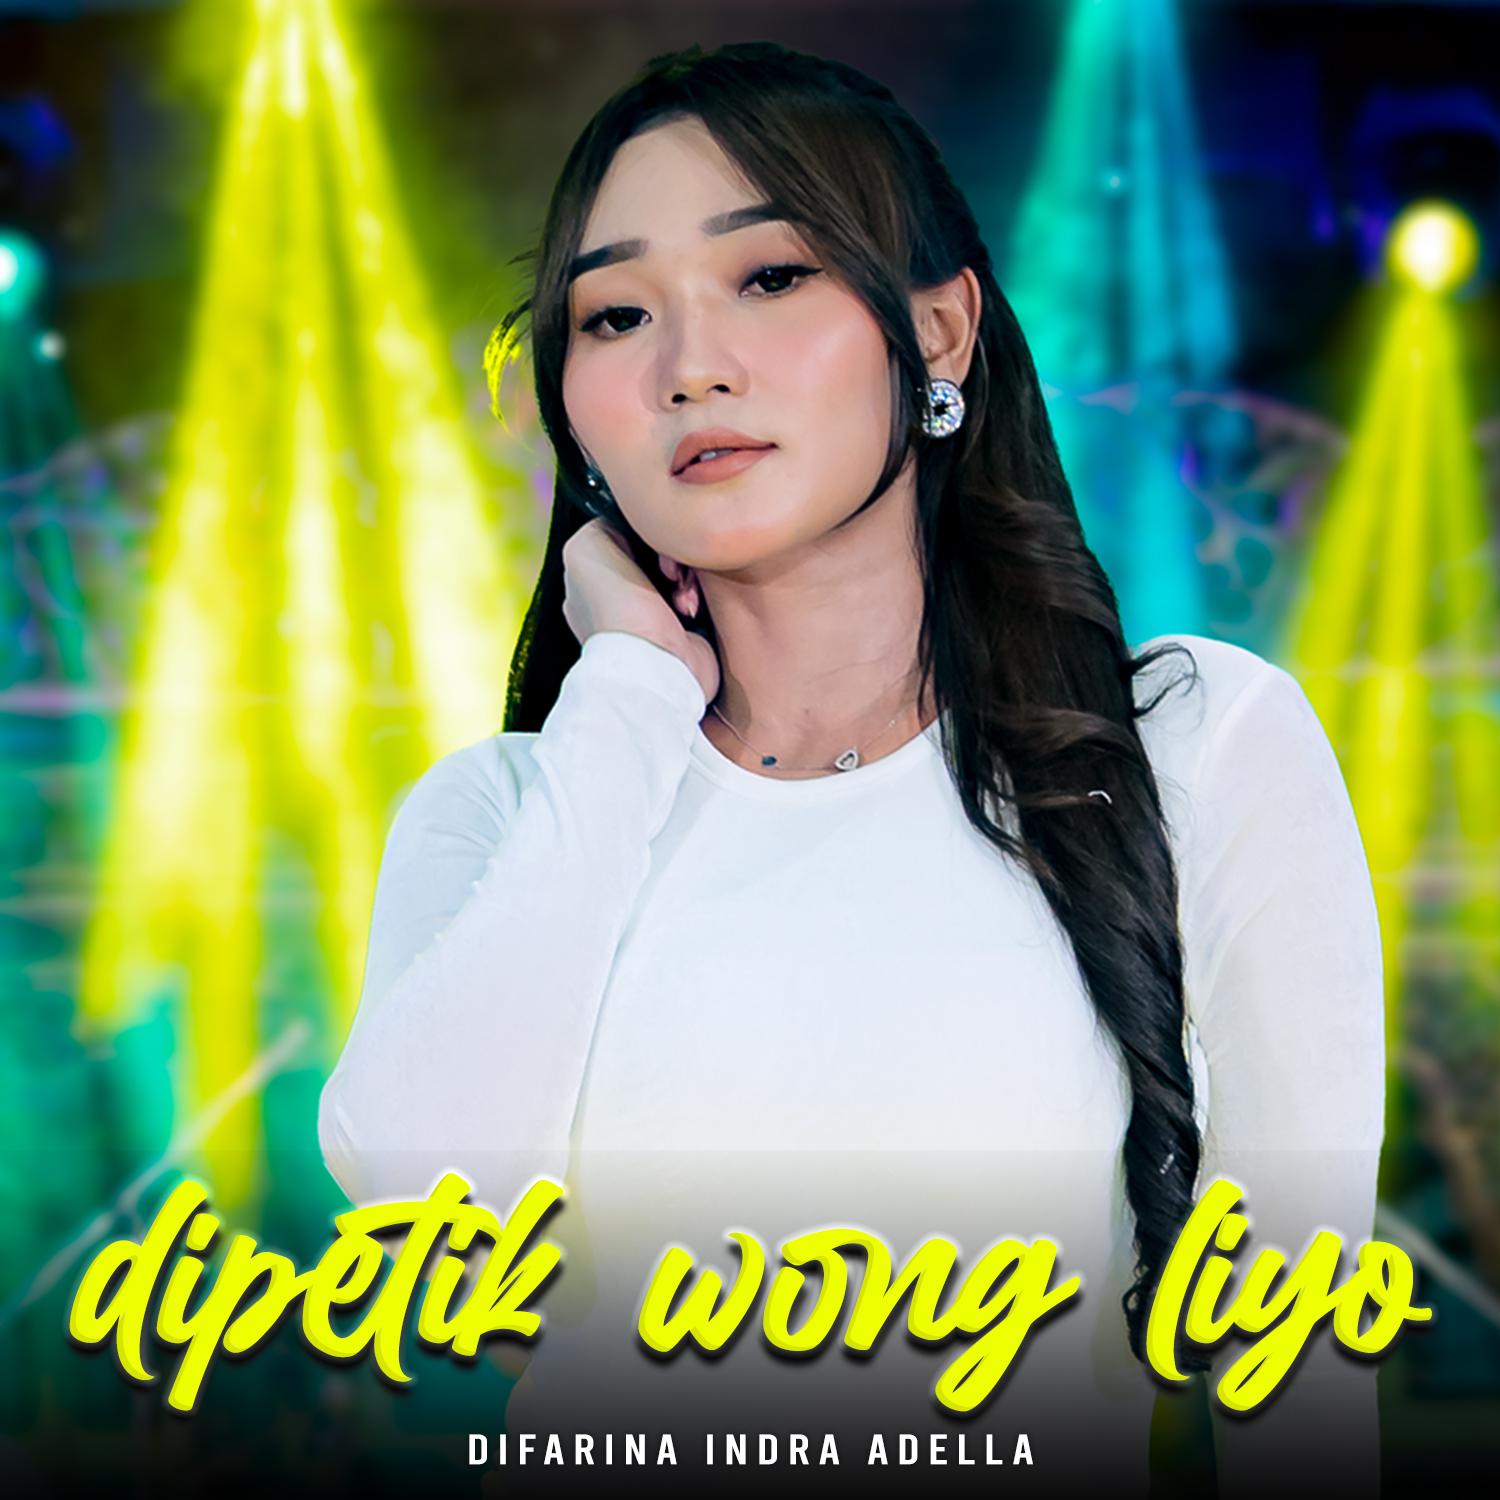 Постер альбома Dipetik Wong Liyo